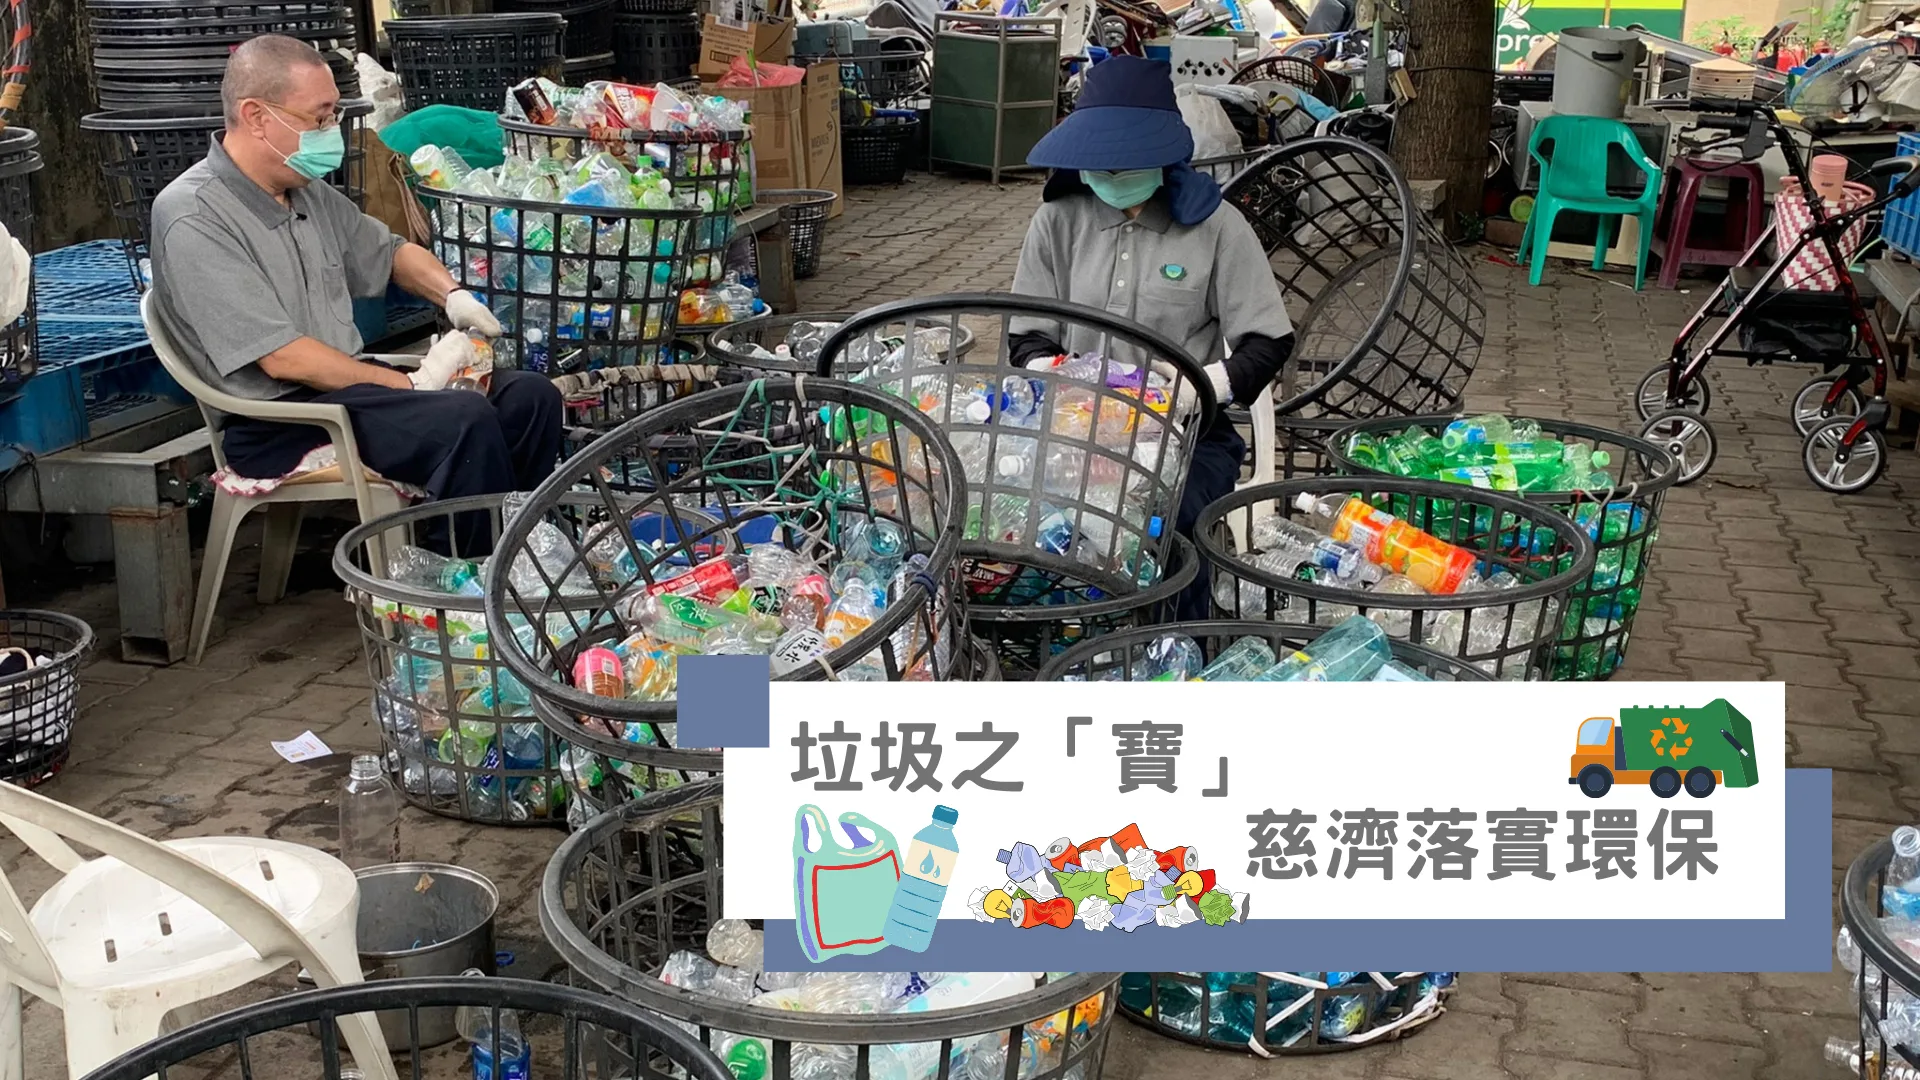 塑膠回收循環利用 慈濟與民共實環「寶」